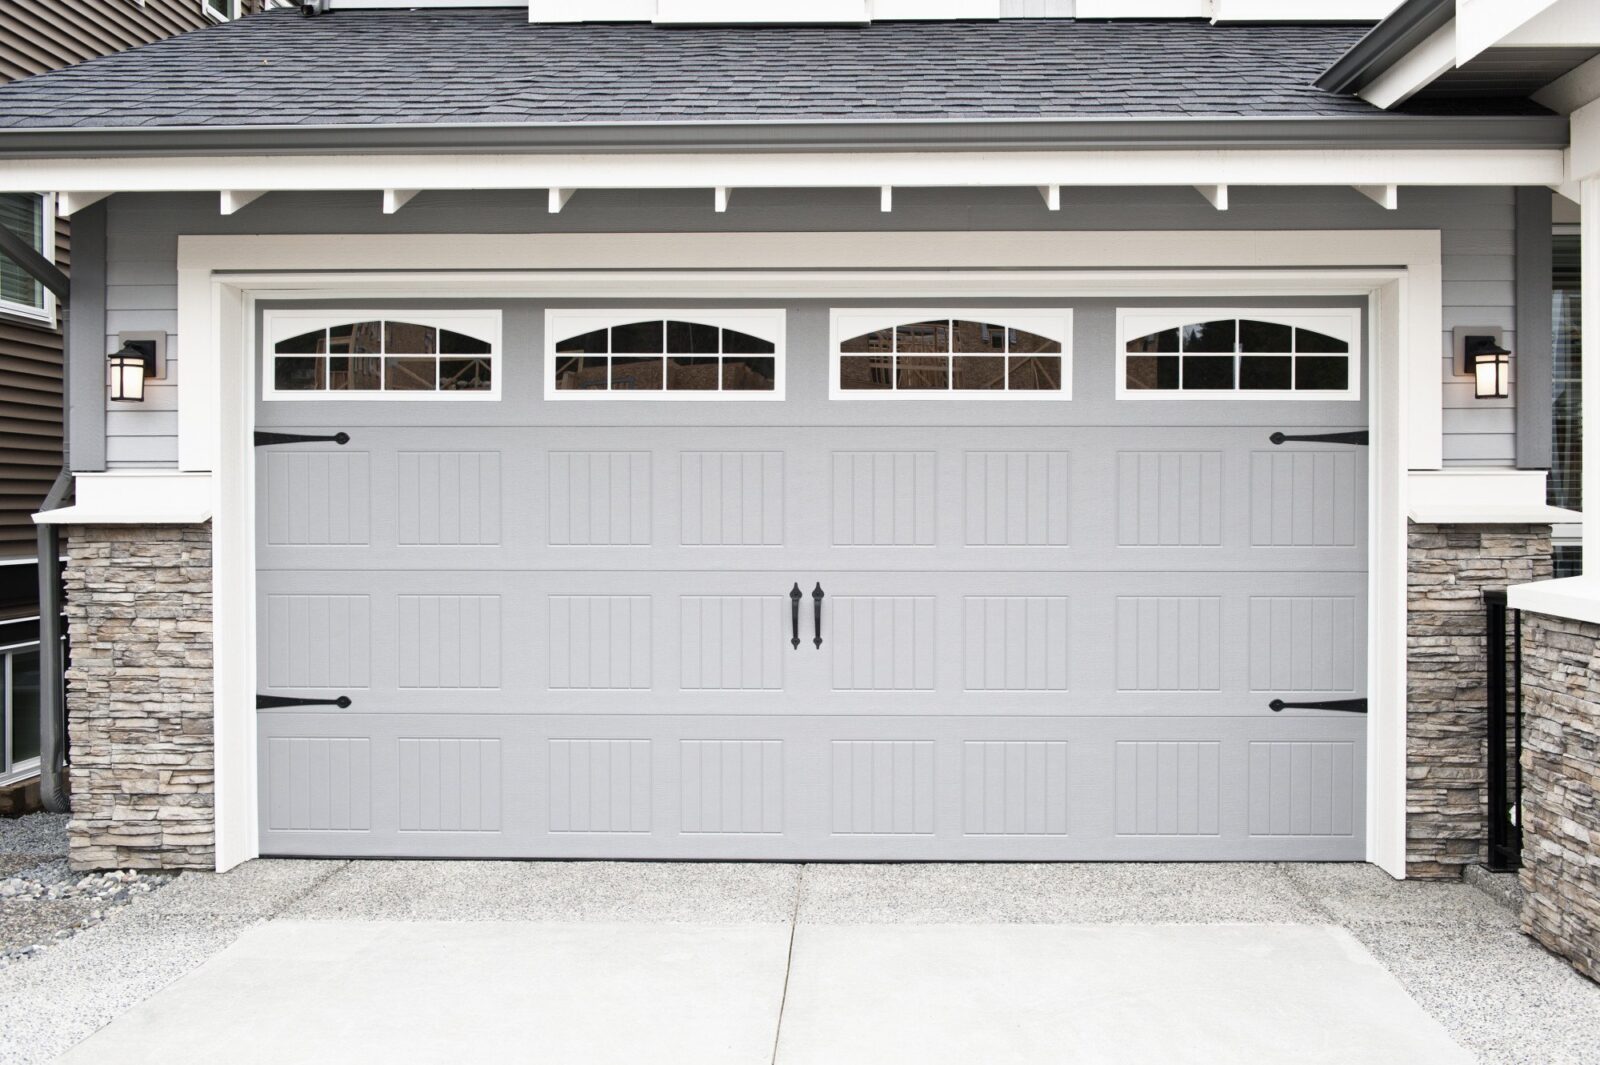 Top Benefits of Aluminum Garage Doors